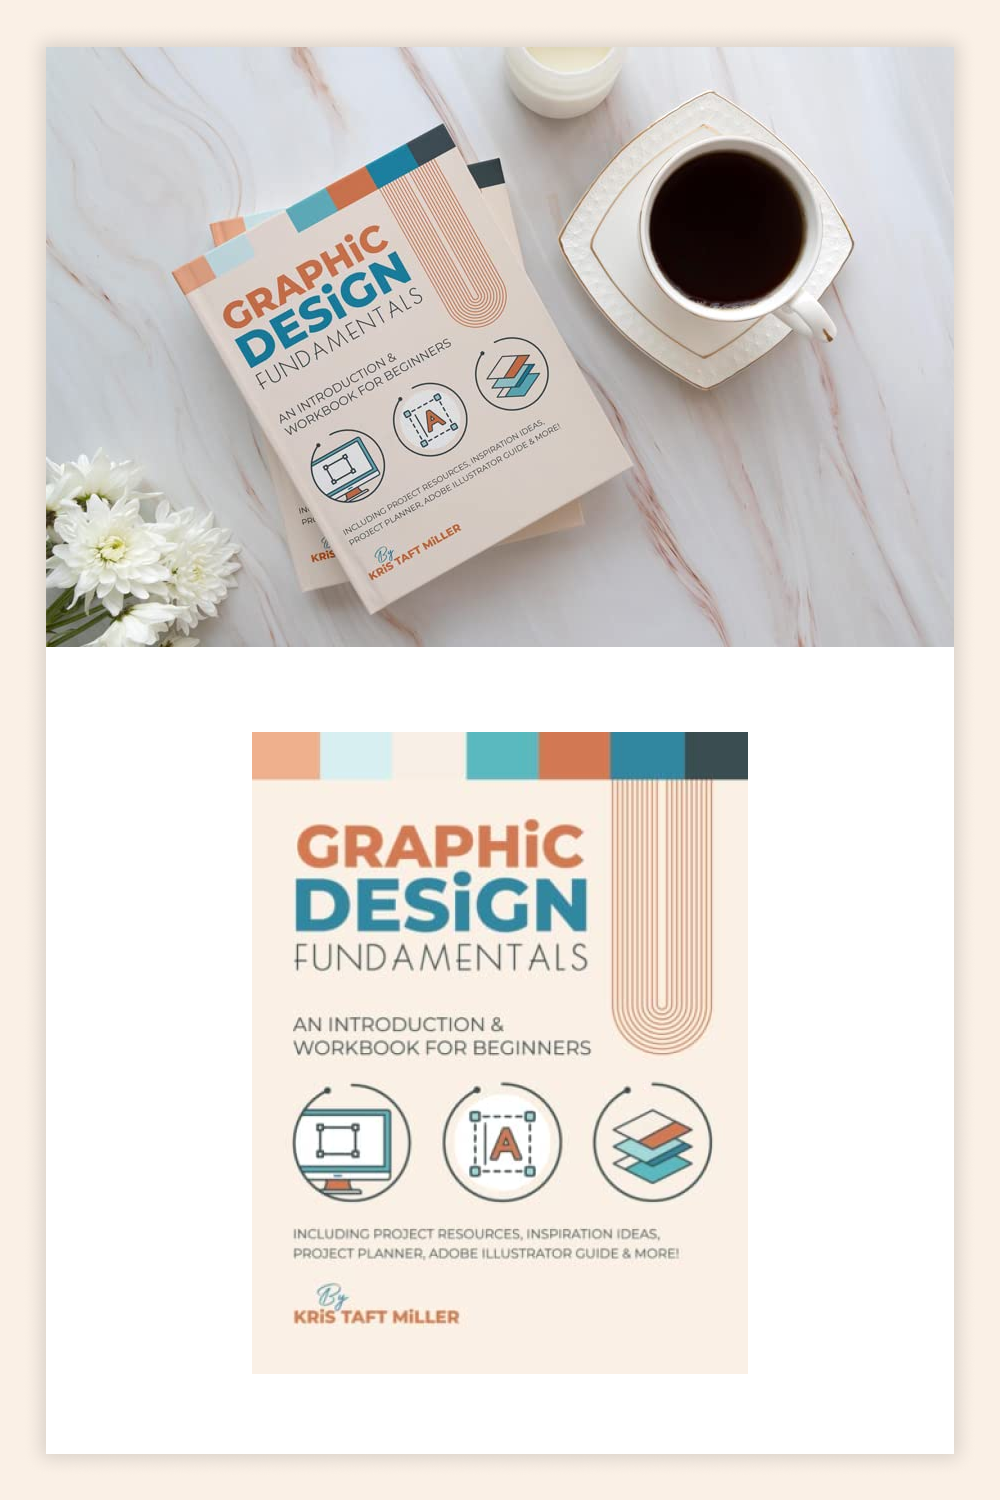 The book Graphic Design Fundamentals.